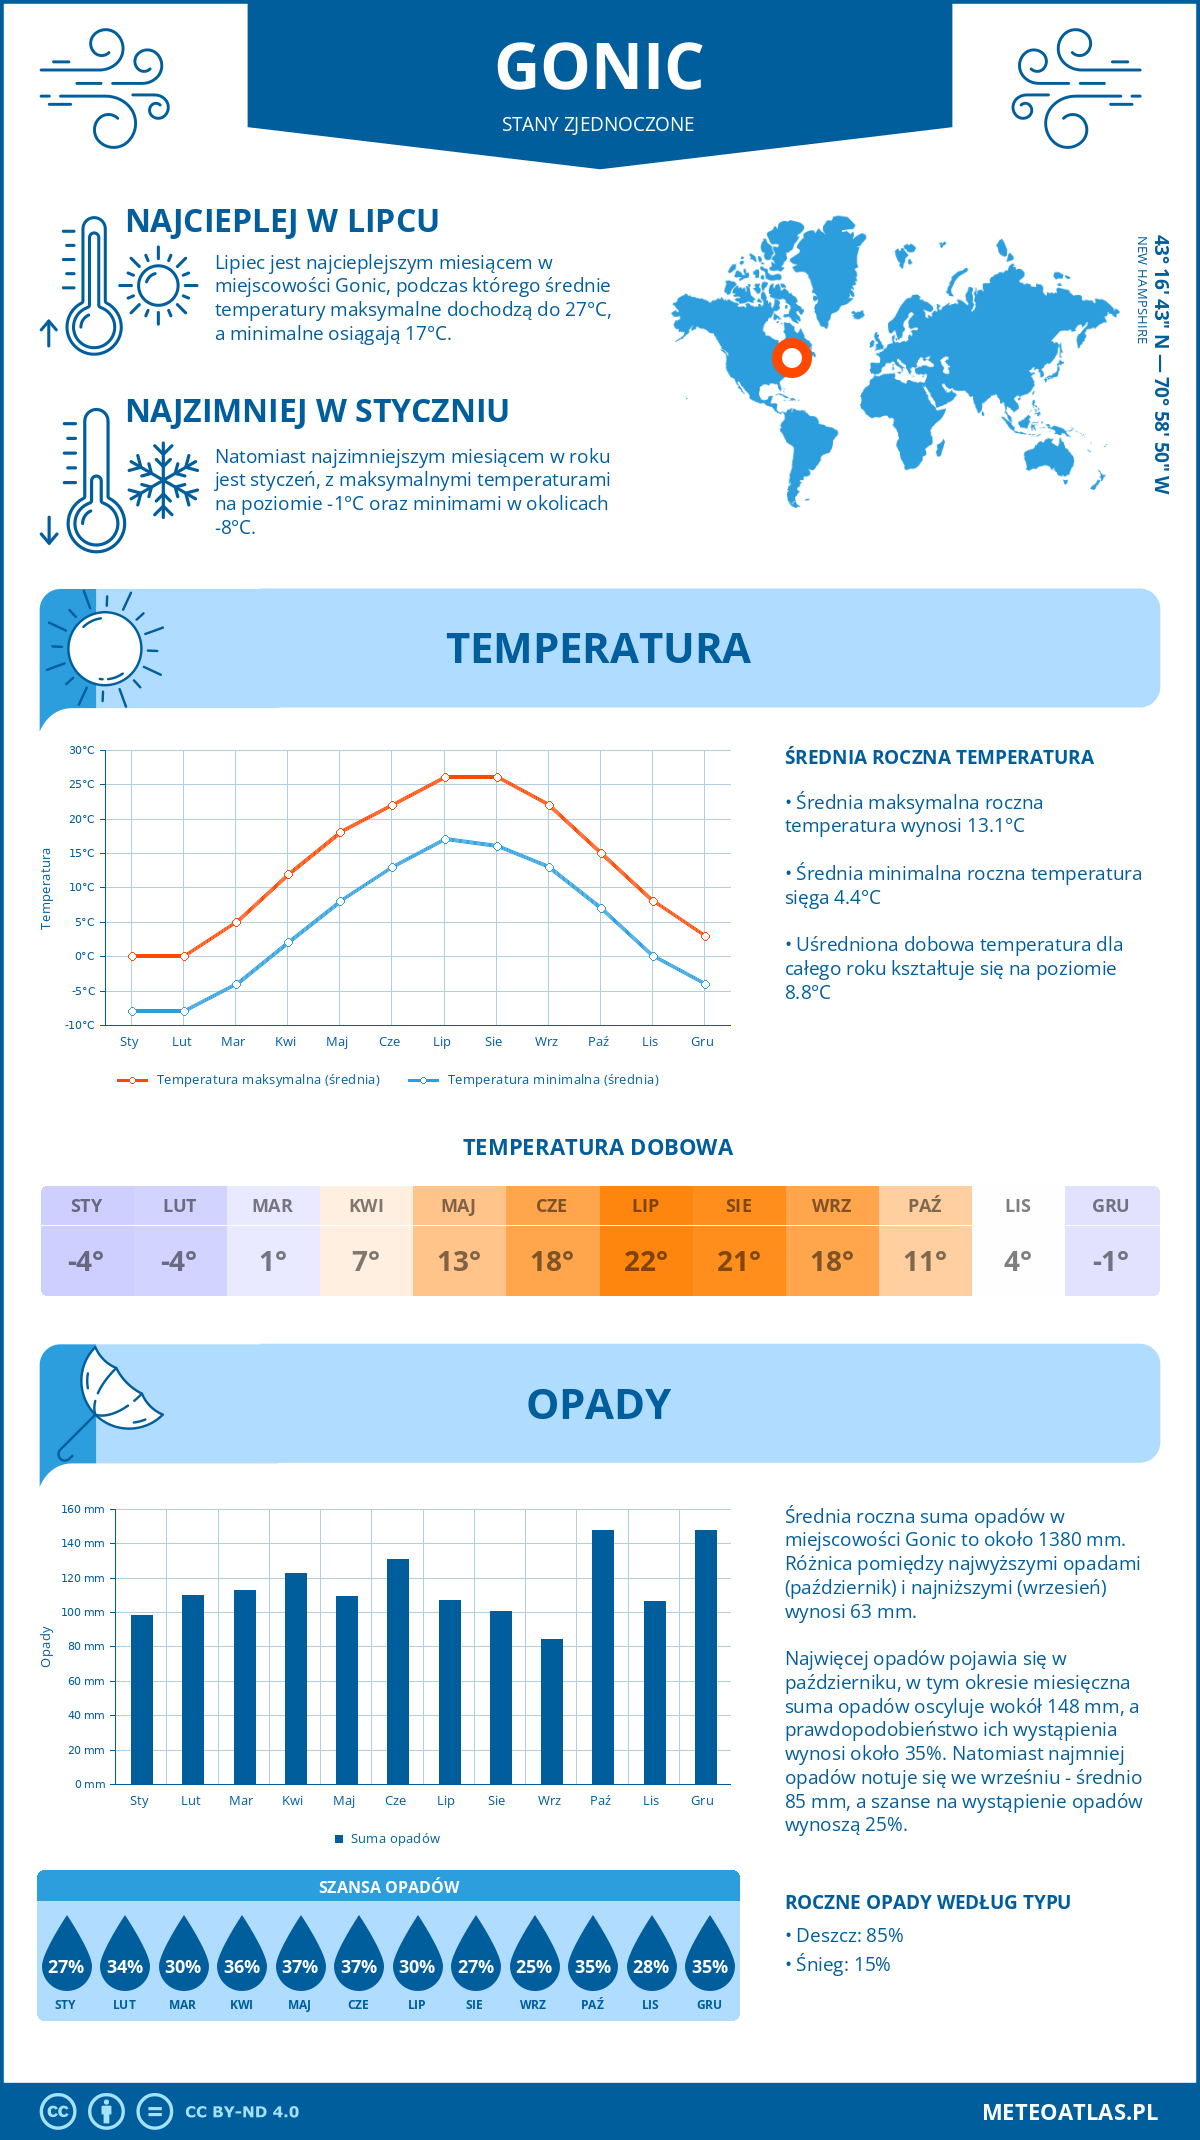 Pogoda Gonic (Stany Zjednoczone). Temperatura oraz opady.